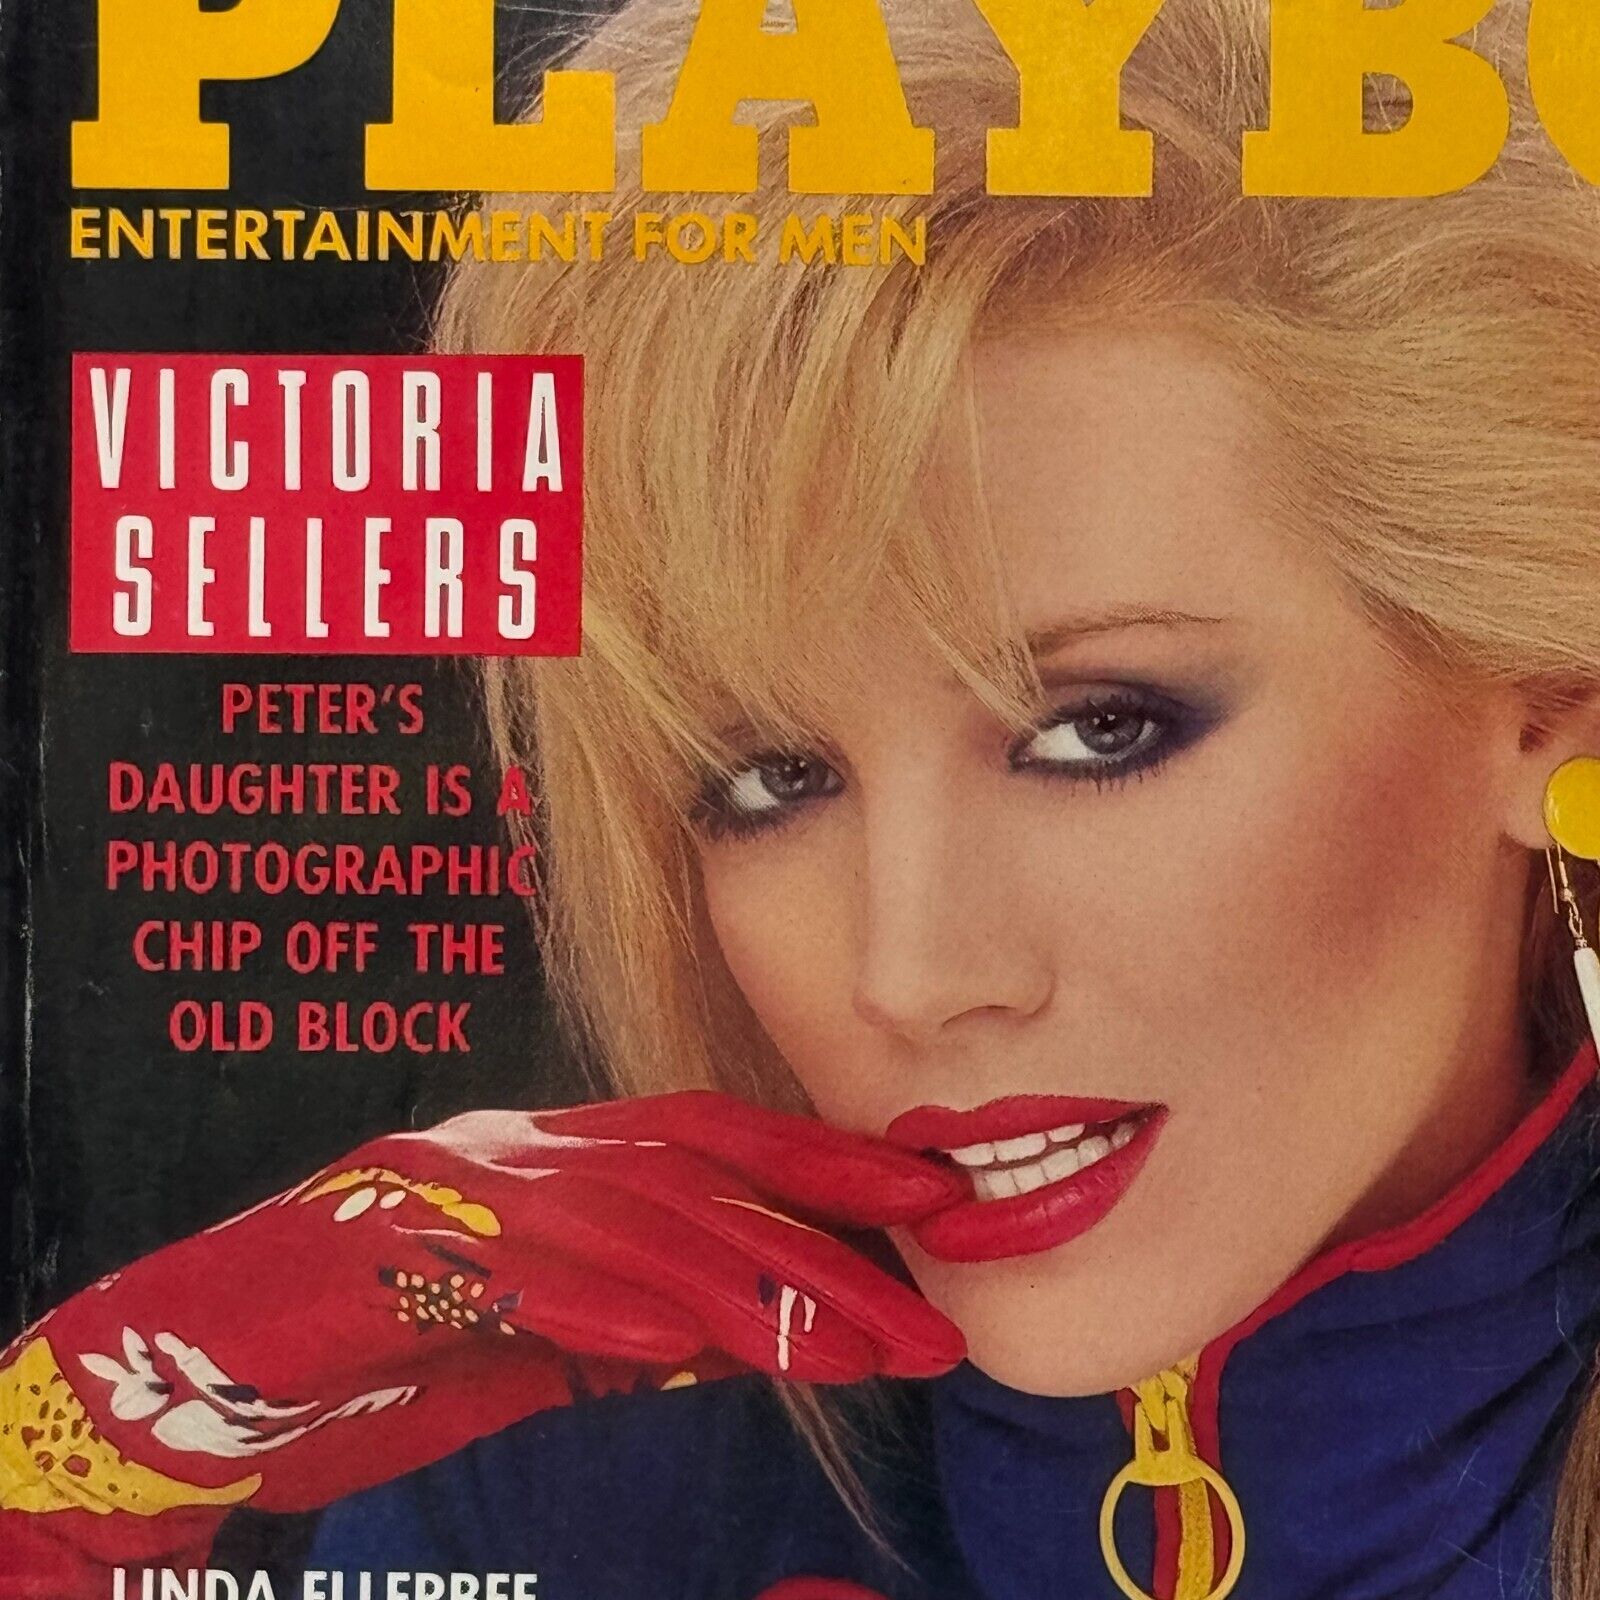 Playboy Vintage Lot of 4 1986 Issues Victoria Stellars Linda Evans Kathy Shower